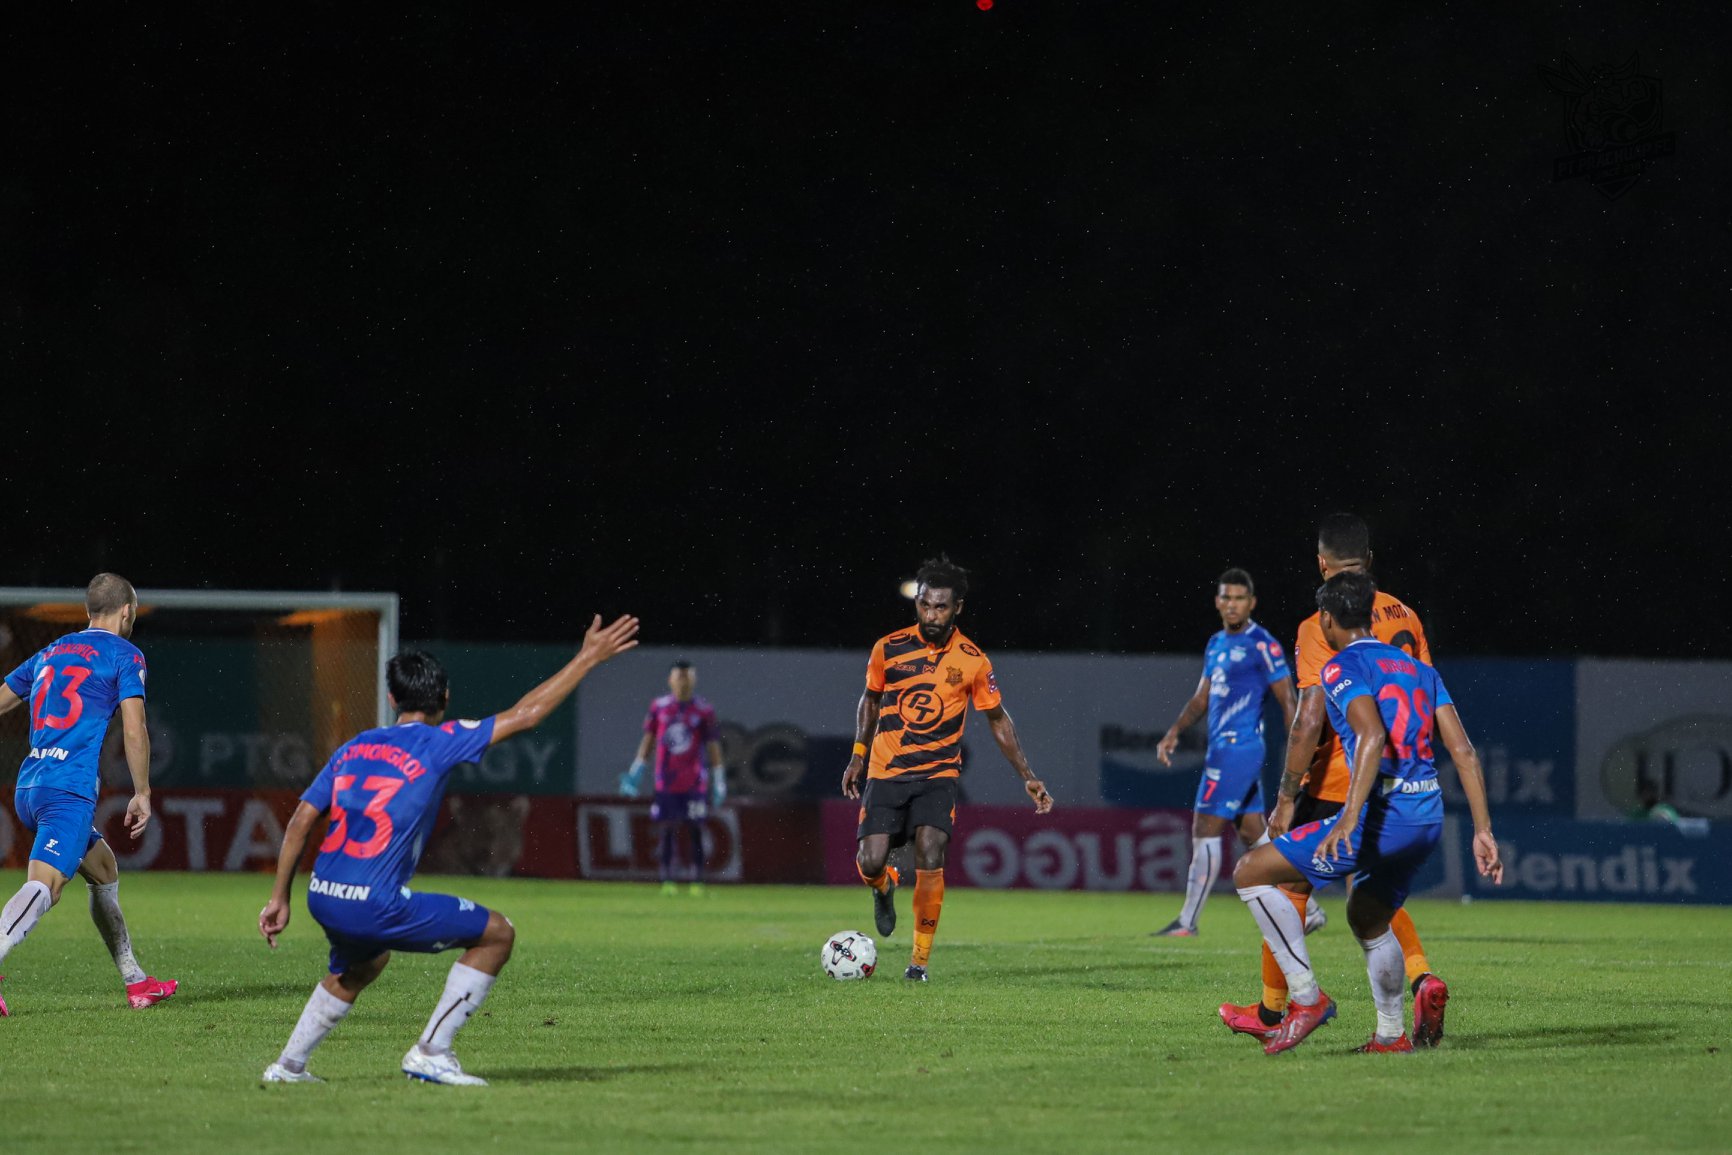 Yanto Basna Cetak Gol Perdana dan Jadi Pahlawan Kemenangan PT Pratchuap FC